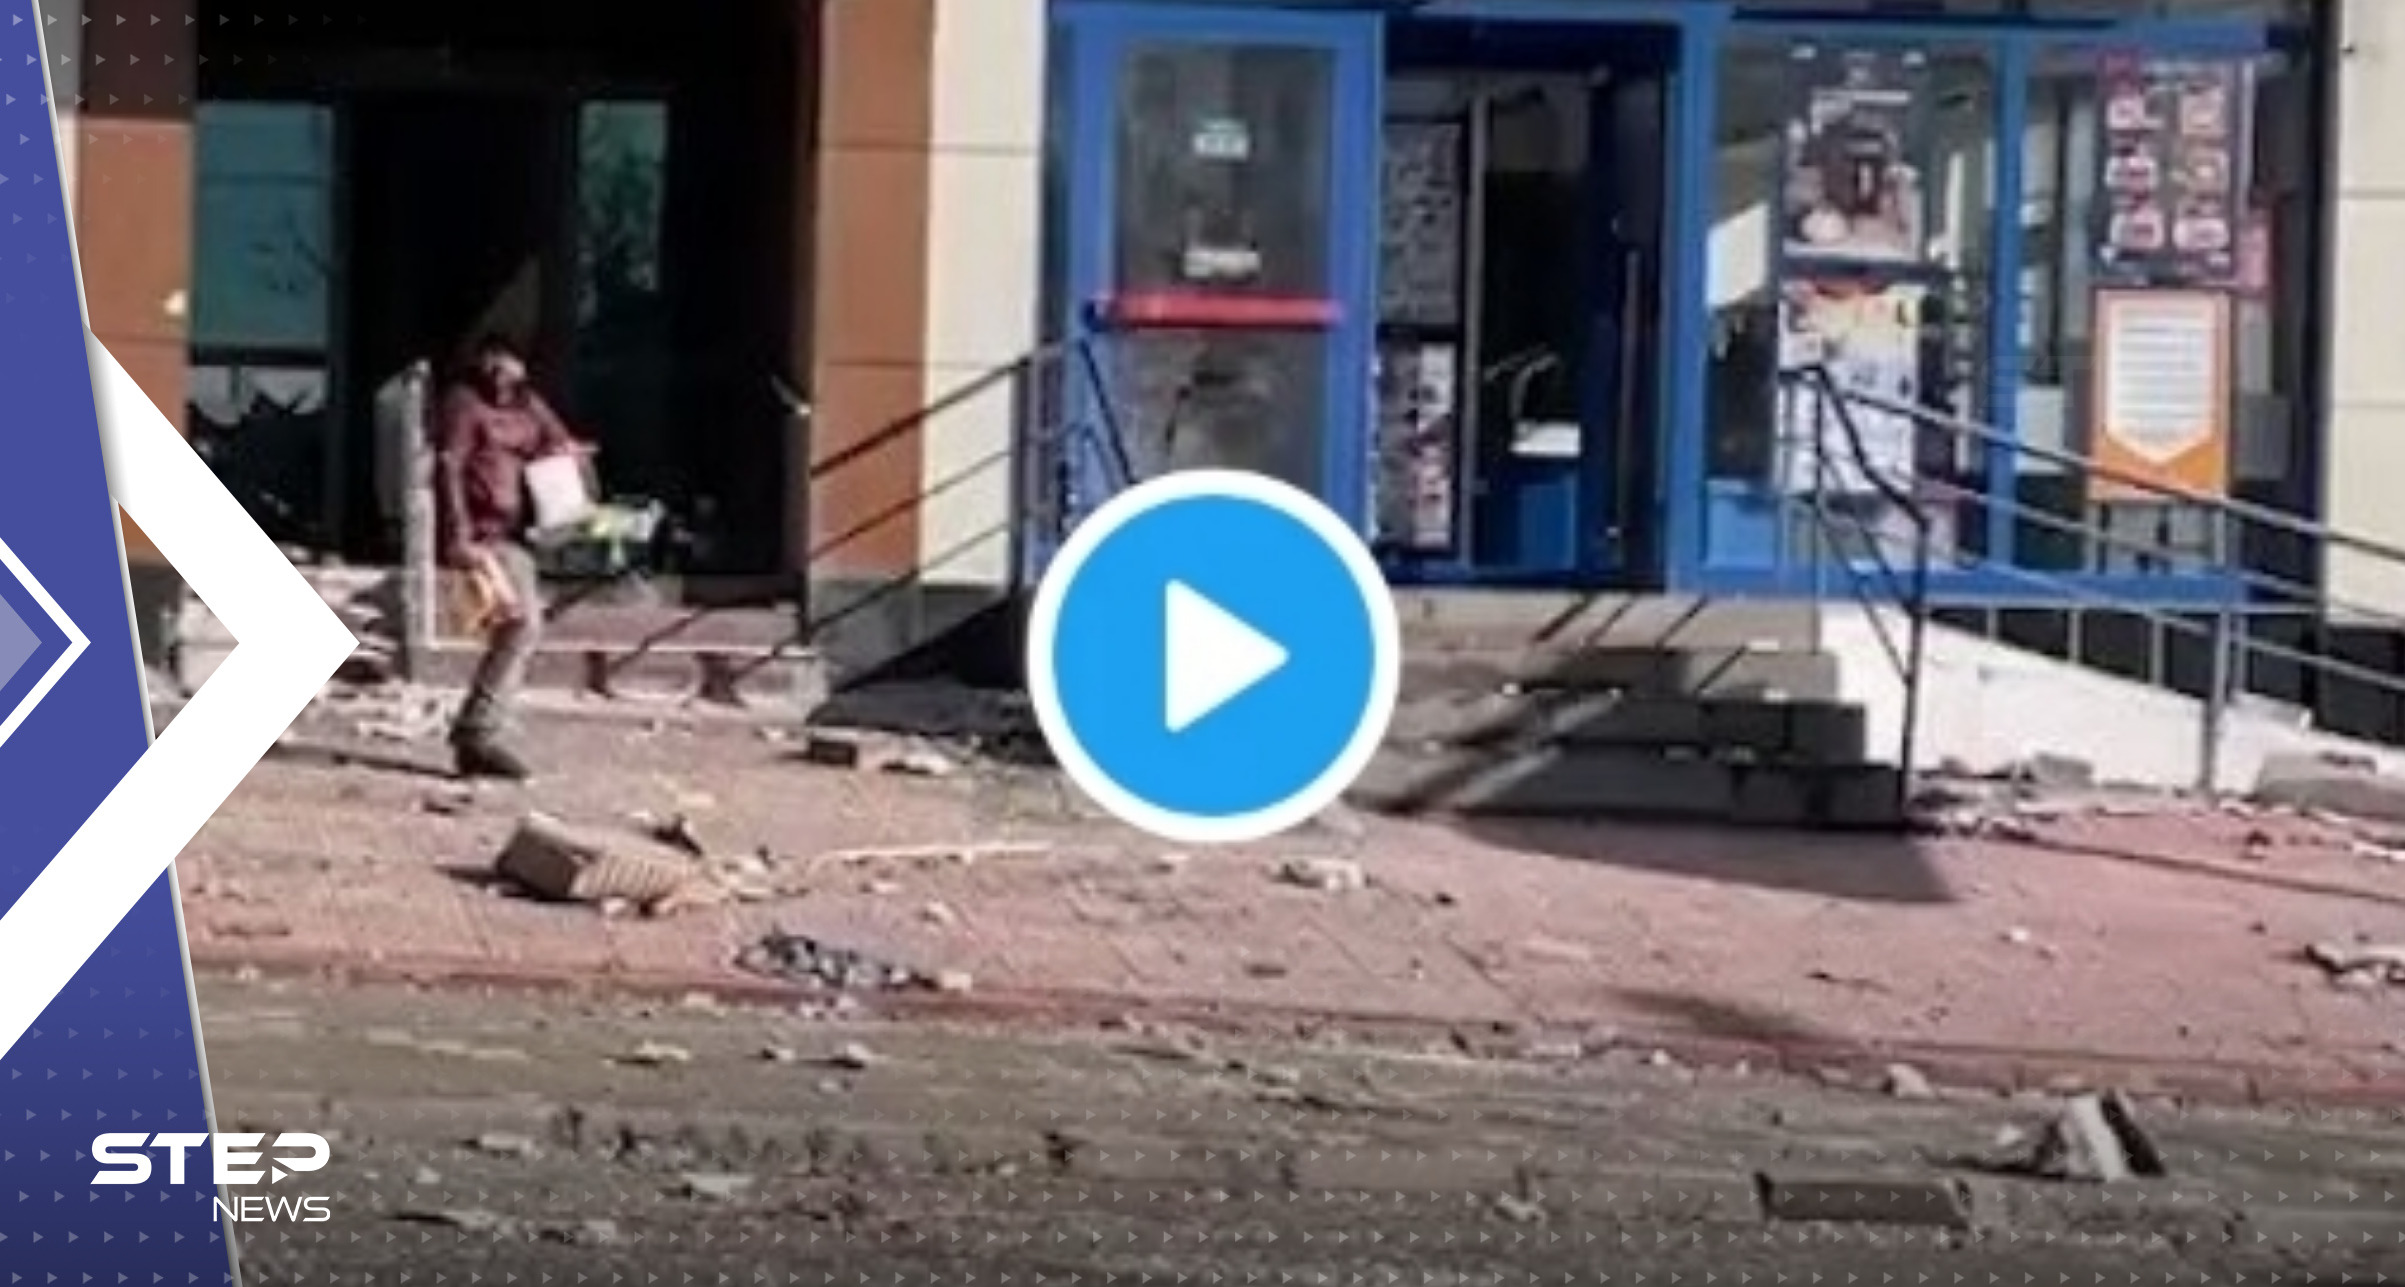 بالفيديو|| لص استغل الزلزال وحاول سرقة متجر في كهرمان مرعش التركية لـ"يتفاجأ" برد فعل الناس